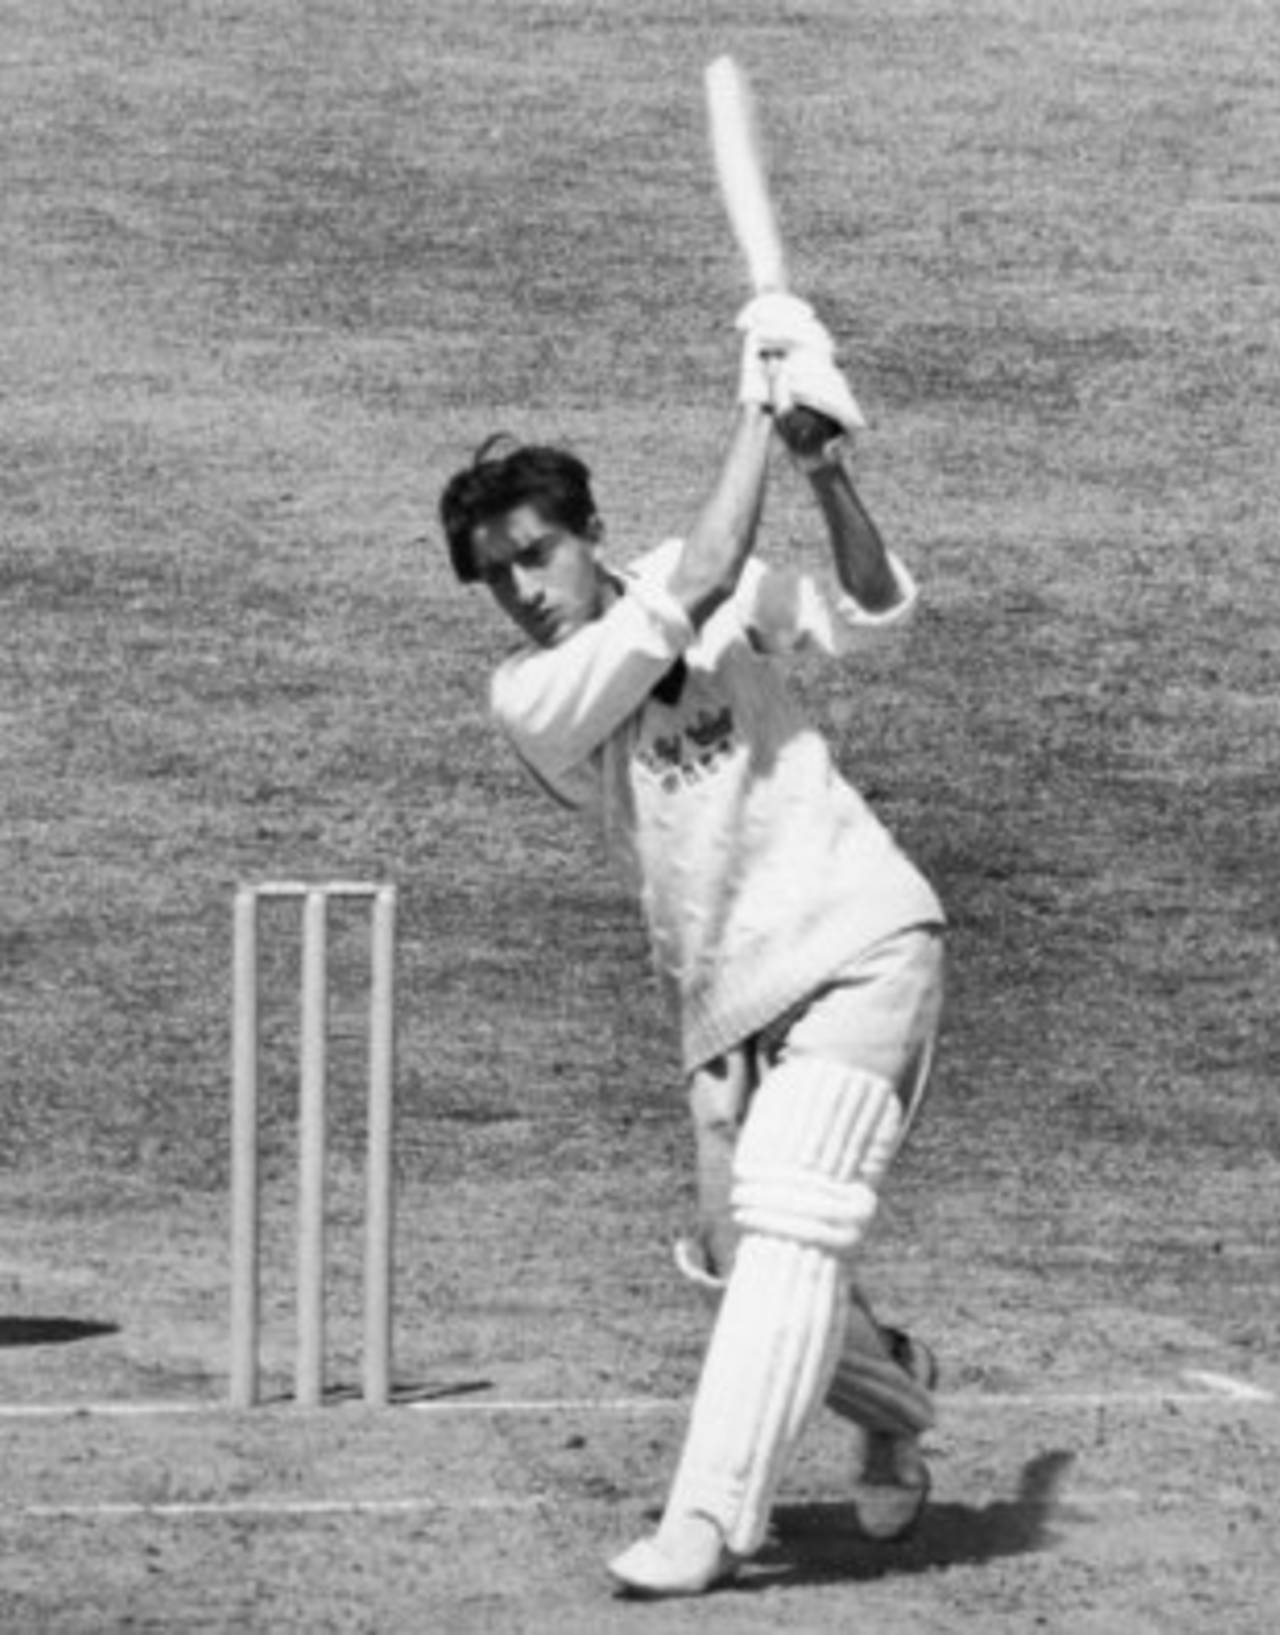 Nawab of Pataudi Jnr - Mansur Ali Khan - batting for Oxford against Surrey in 1961